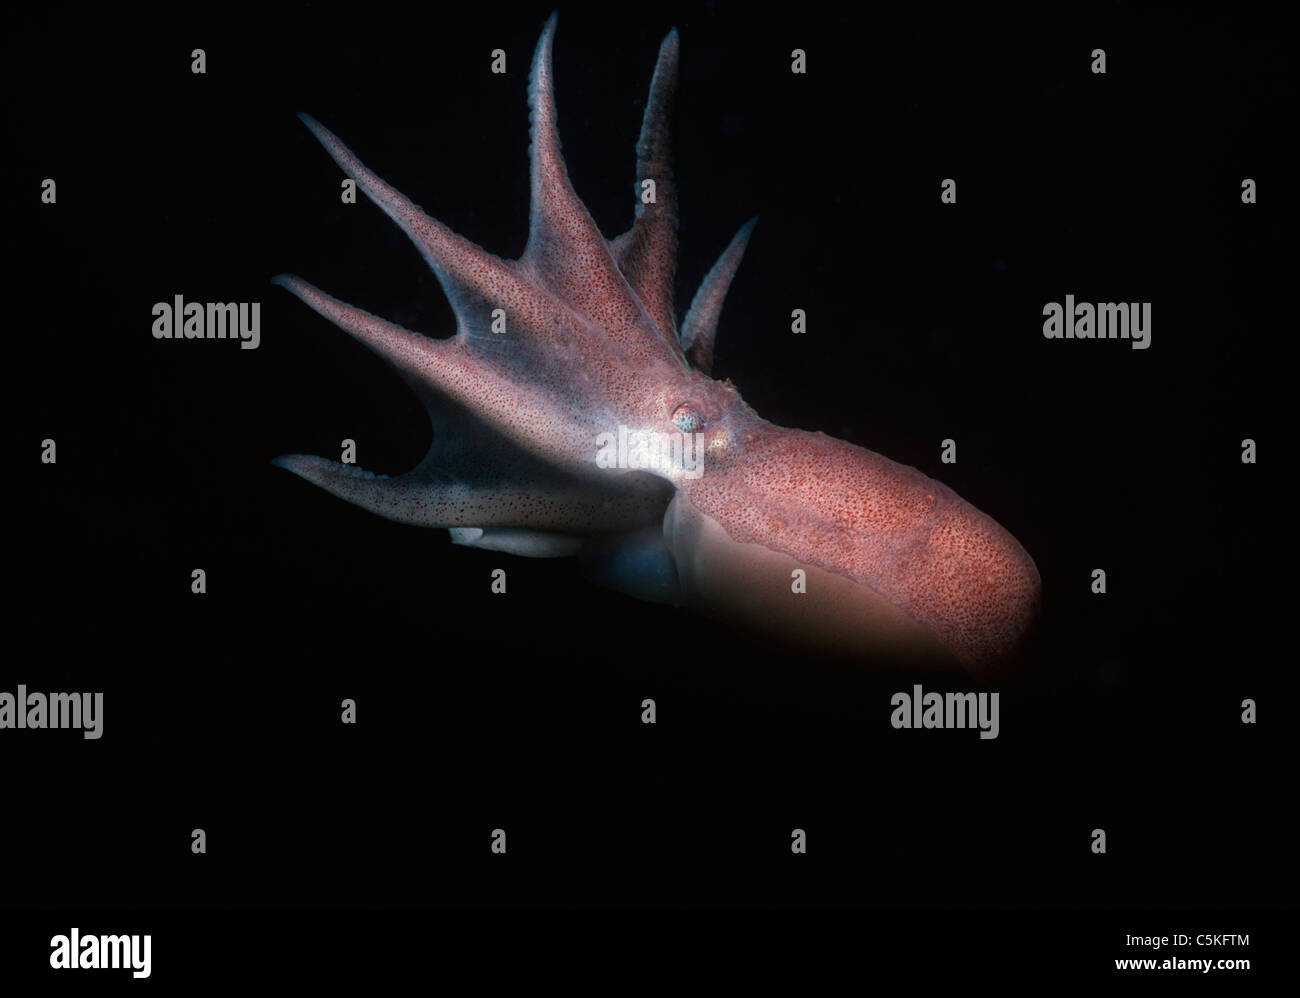 Atlantico comune Polpo (Octopus vulgaris) nuoto in mare aperto. La Nuova Inghilterra, Stati Uniti d'America - Oceano Atlantico settentrionale Foto Stock